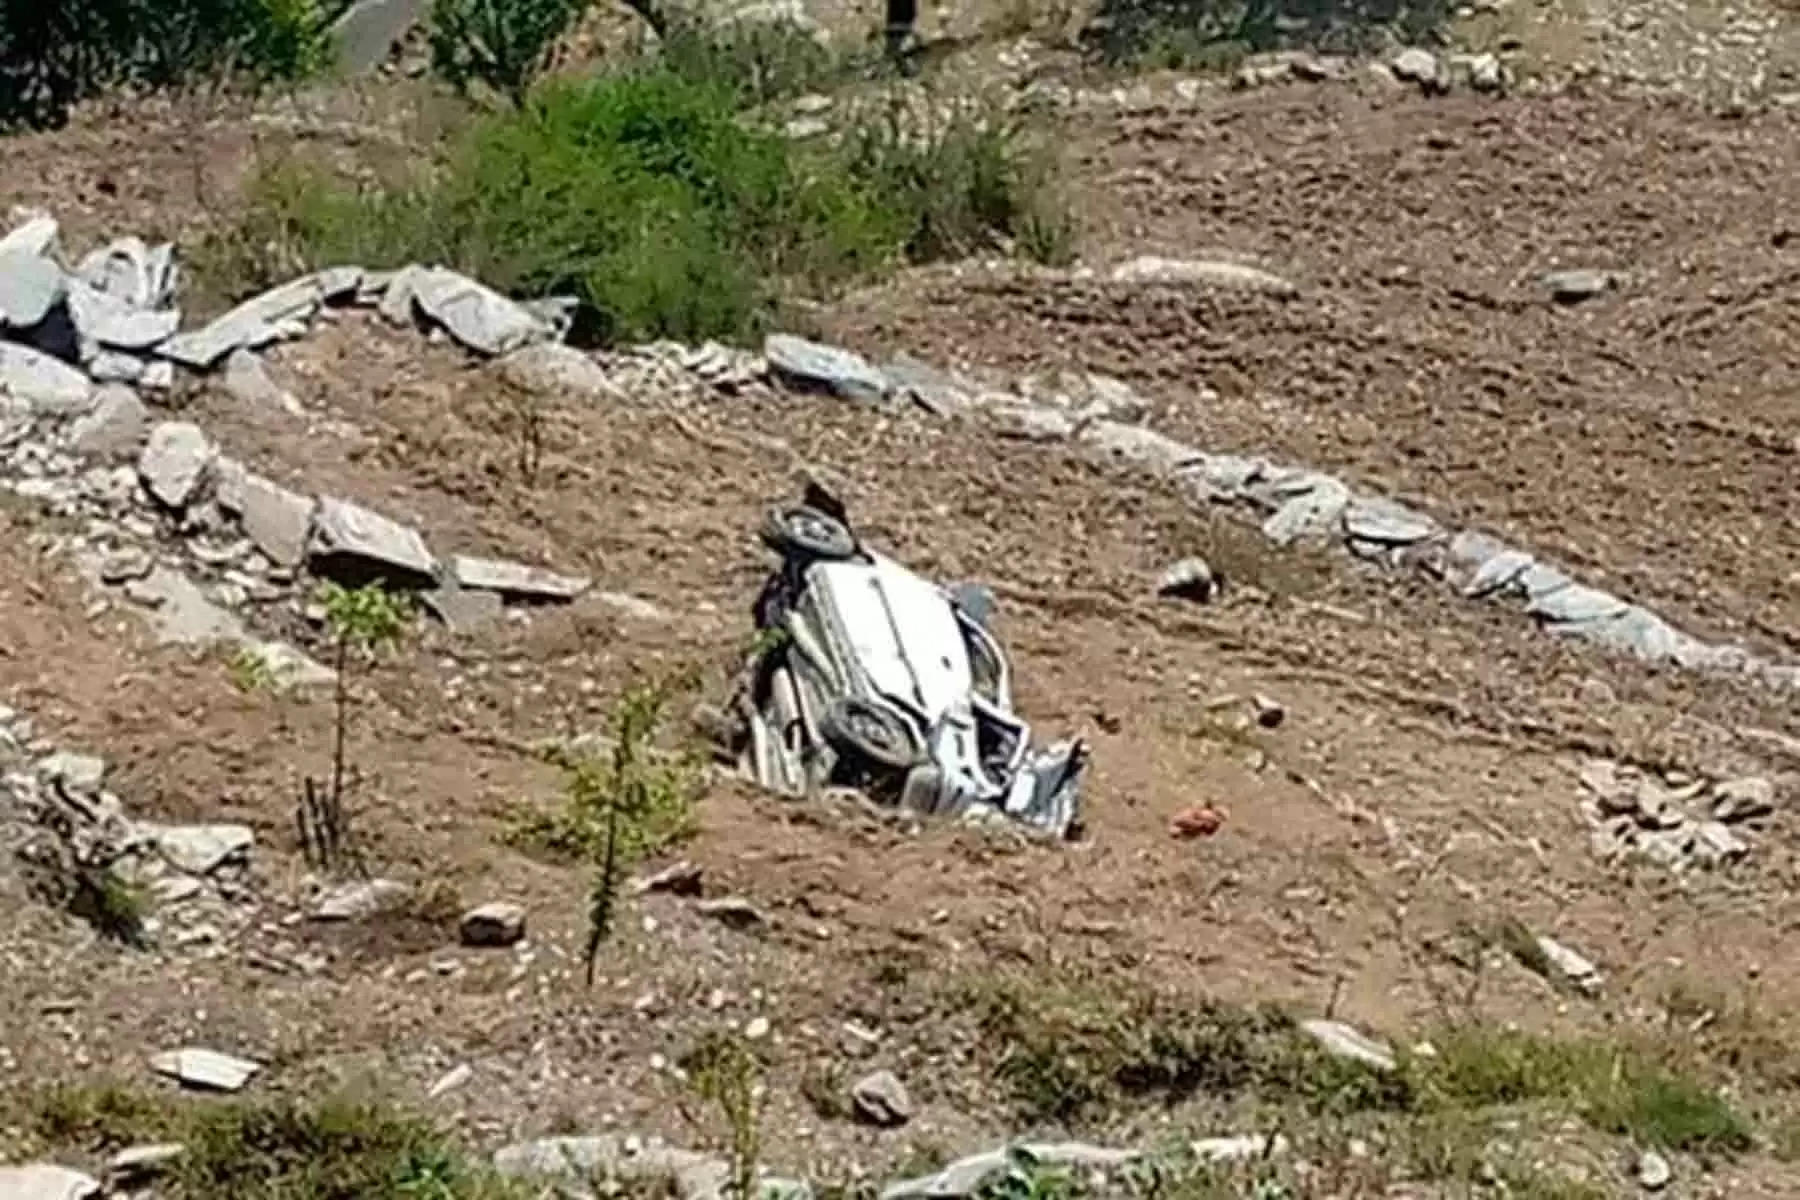 हिमाचल प्रदेश के चम्बा जिला में एक कार हादसे का शिकार हो गई। हादसे में पांच लोग घायल हो गए हैं। यह कार हादसा कुंडी-तुर मार्ग पर हुआ है। बताया जा रहा है कि कुंडी से आगे कुछ दूरी पर चालक ने गाड़ी से नियंत्रण खो दिया। इस वजह से कार हादसे का शिकार हो गई। गाड़ी लुढ़कती हुई सड़क से करीब 200 मीटर नीचे खाई में जा गिरी।